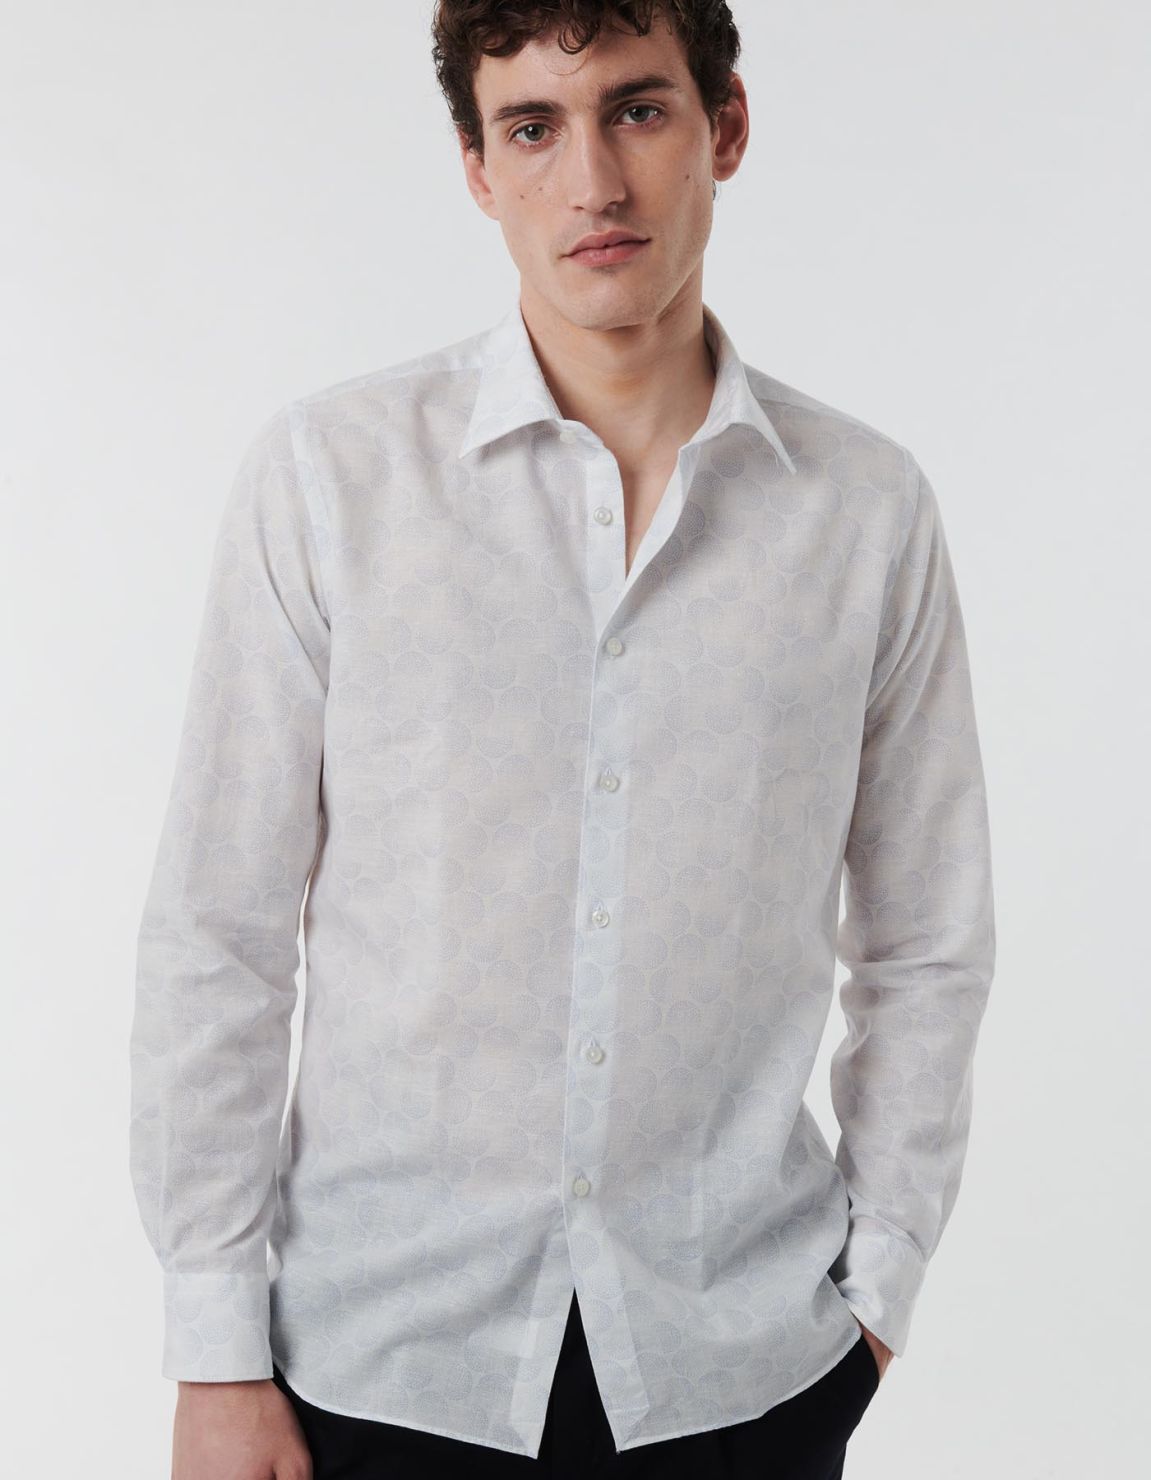 Light Blue Linen Pattern Shirt Collar spread Tailor Custom Fit 6